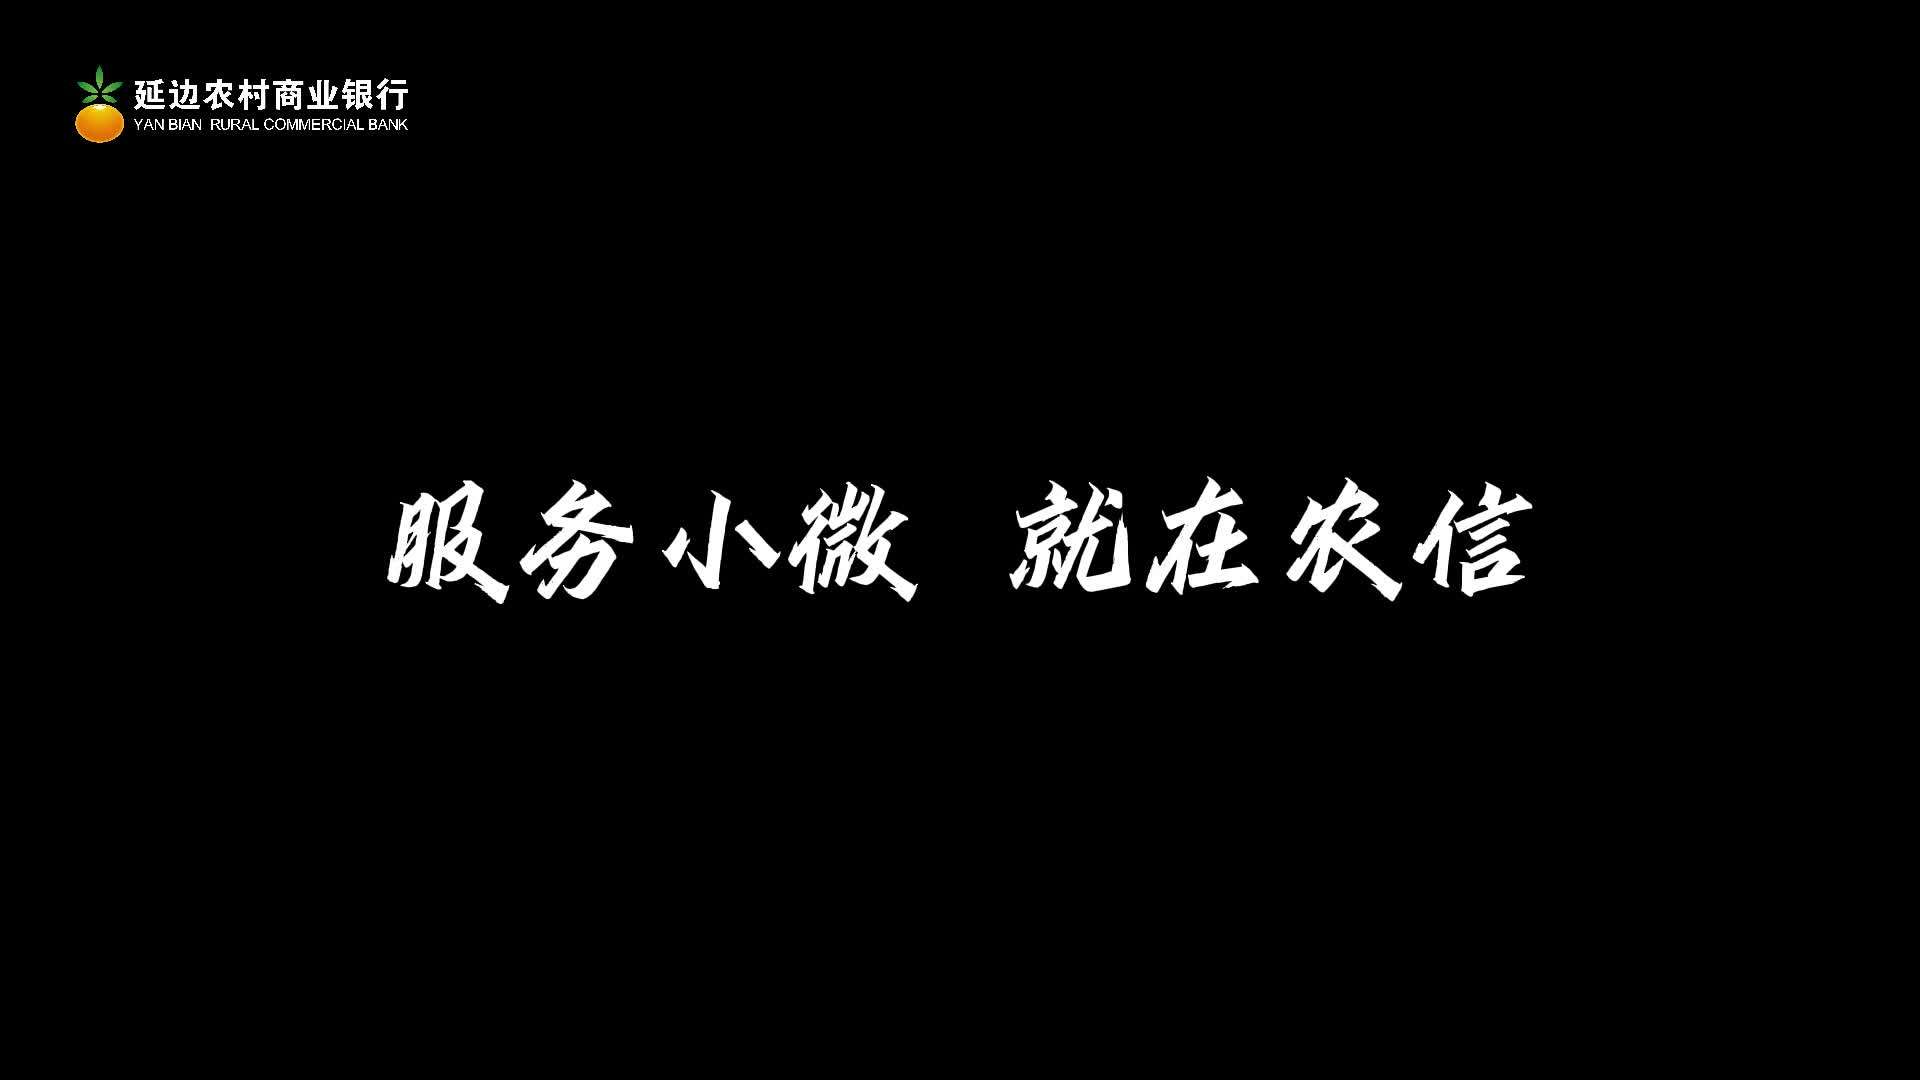 延边州农村商业银行  企业贷 宣传片